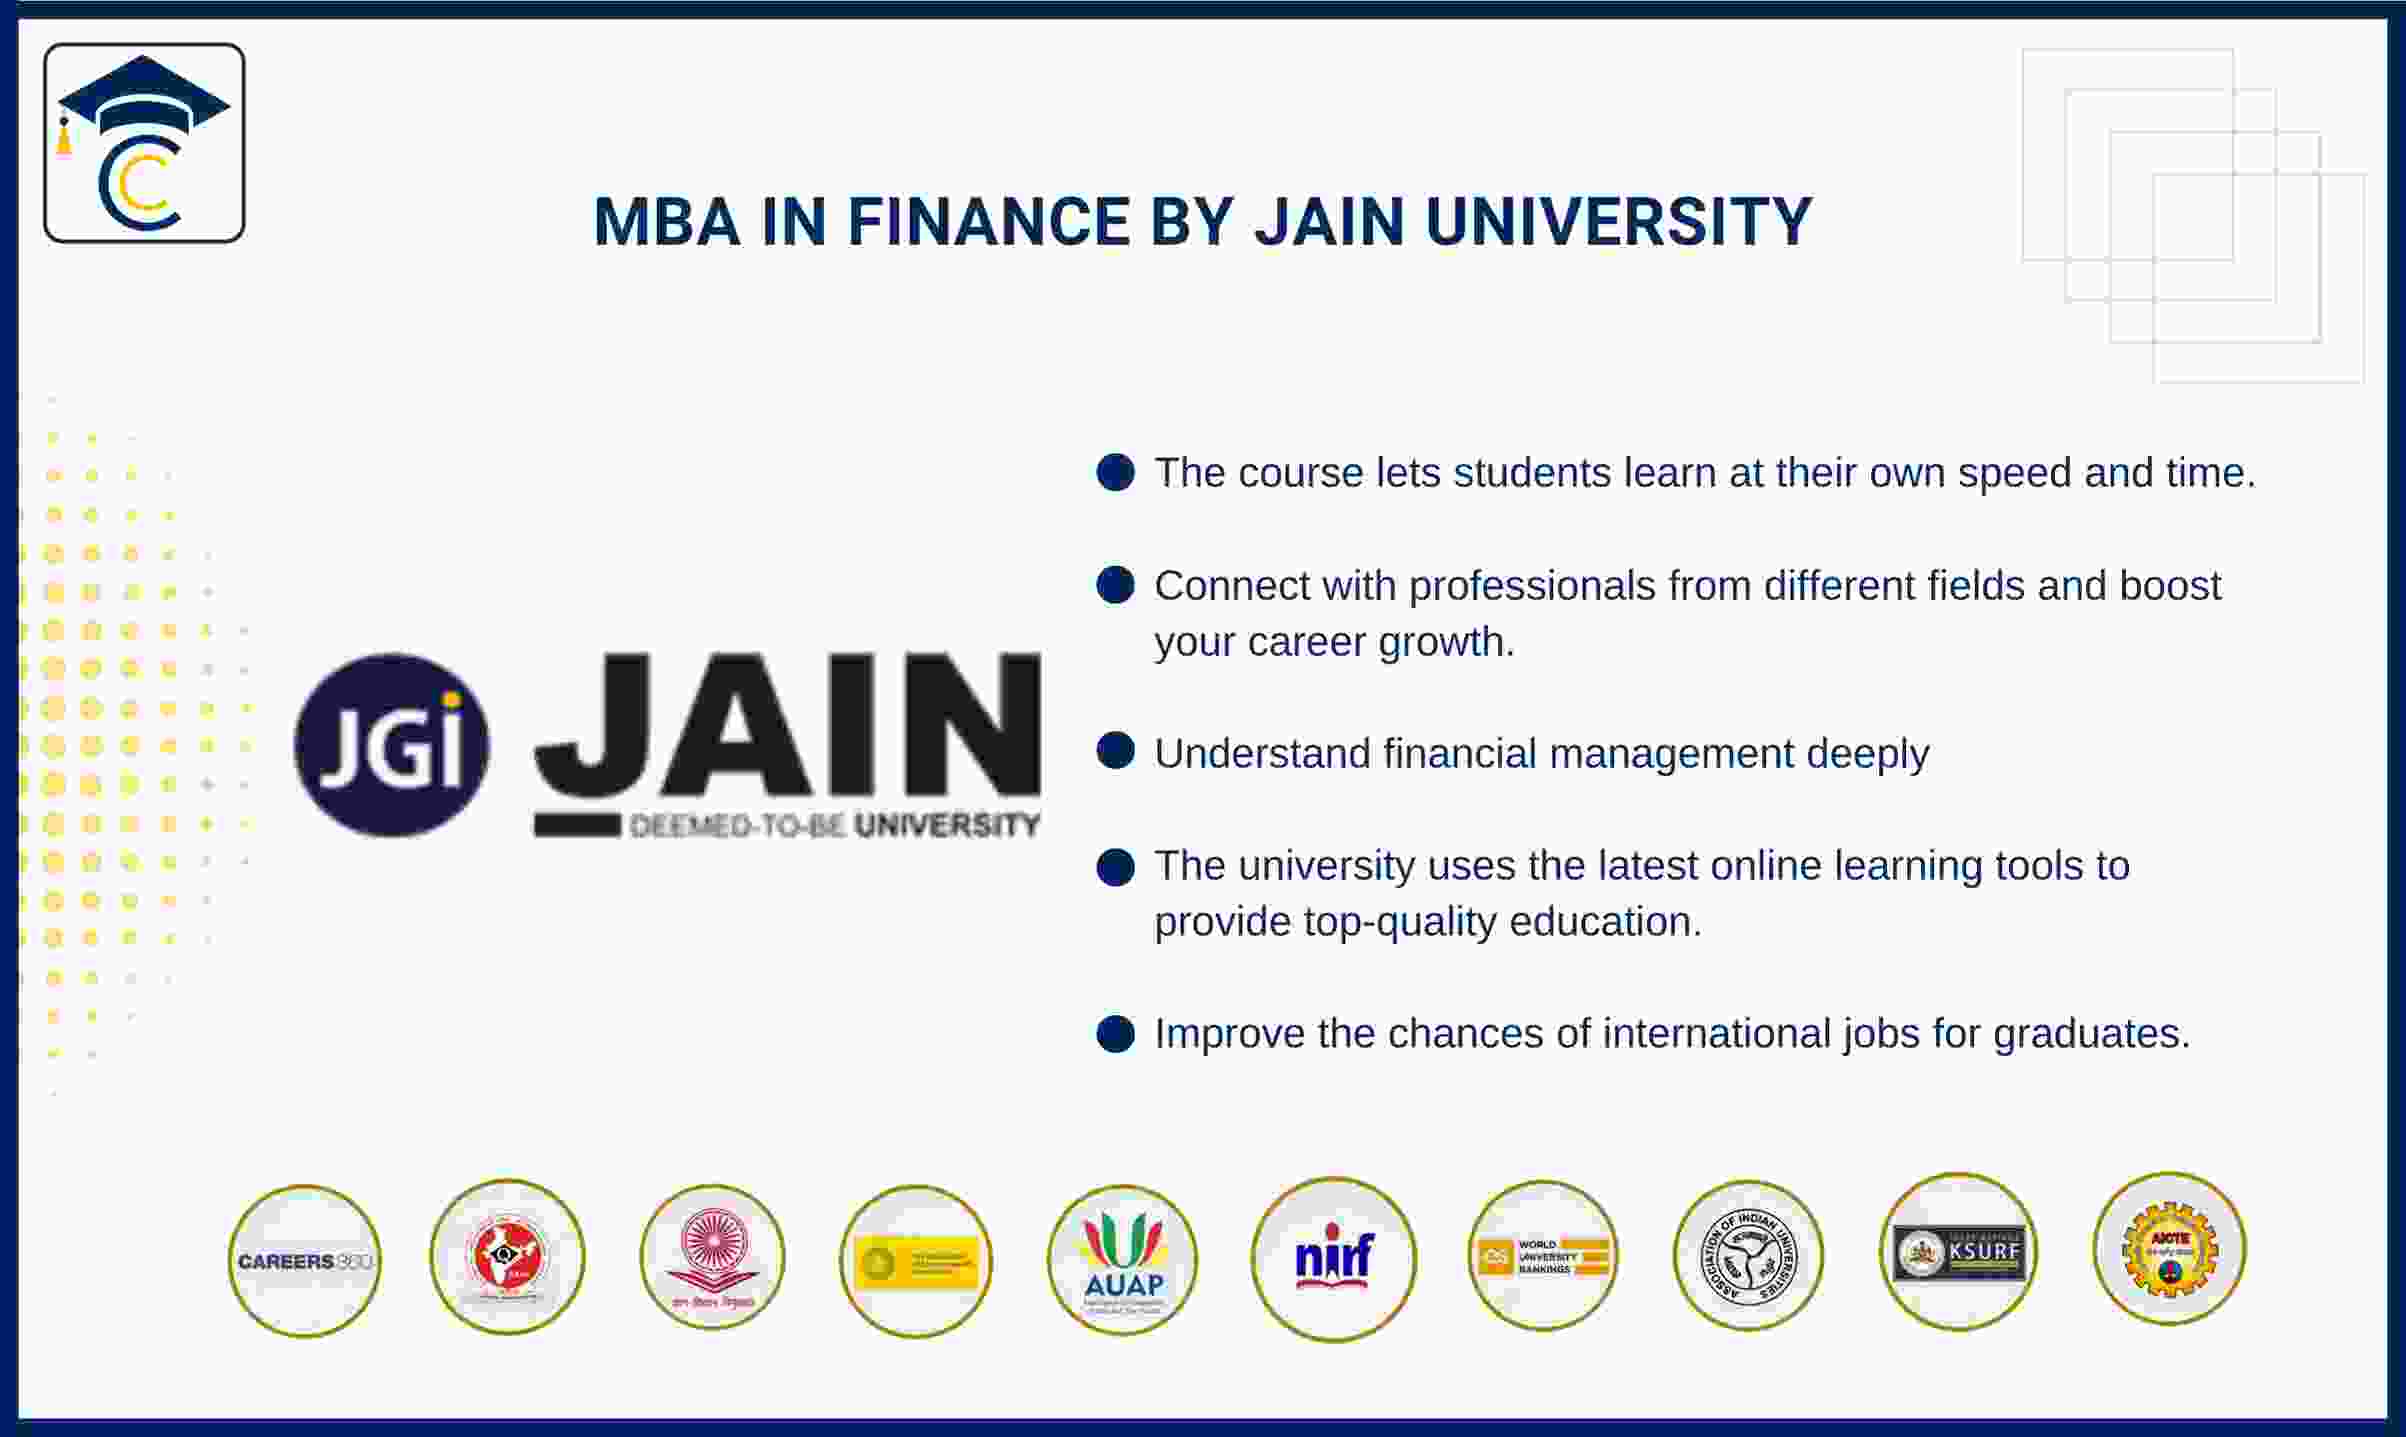 mba-in-finance-jain-university